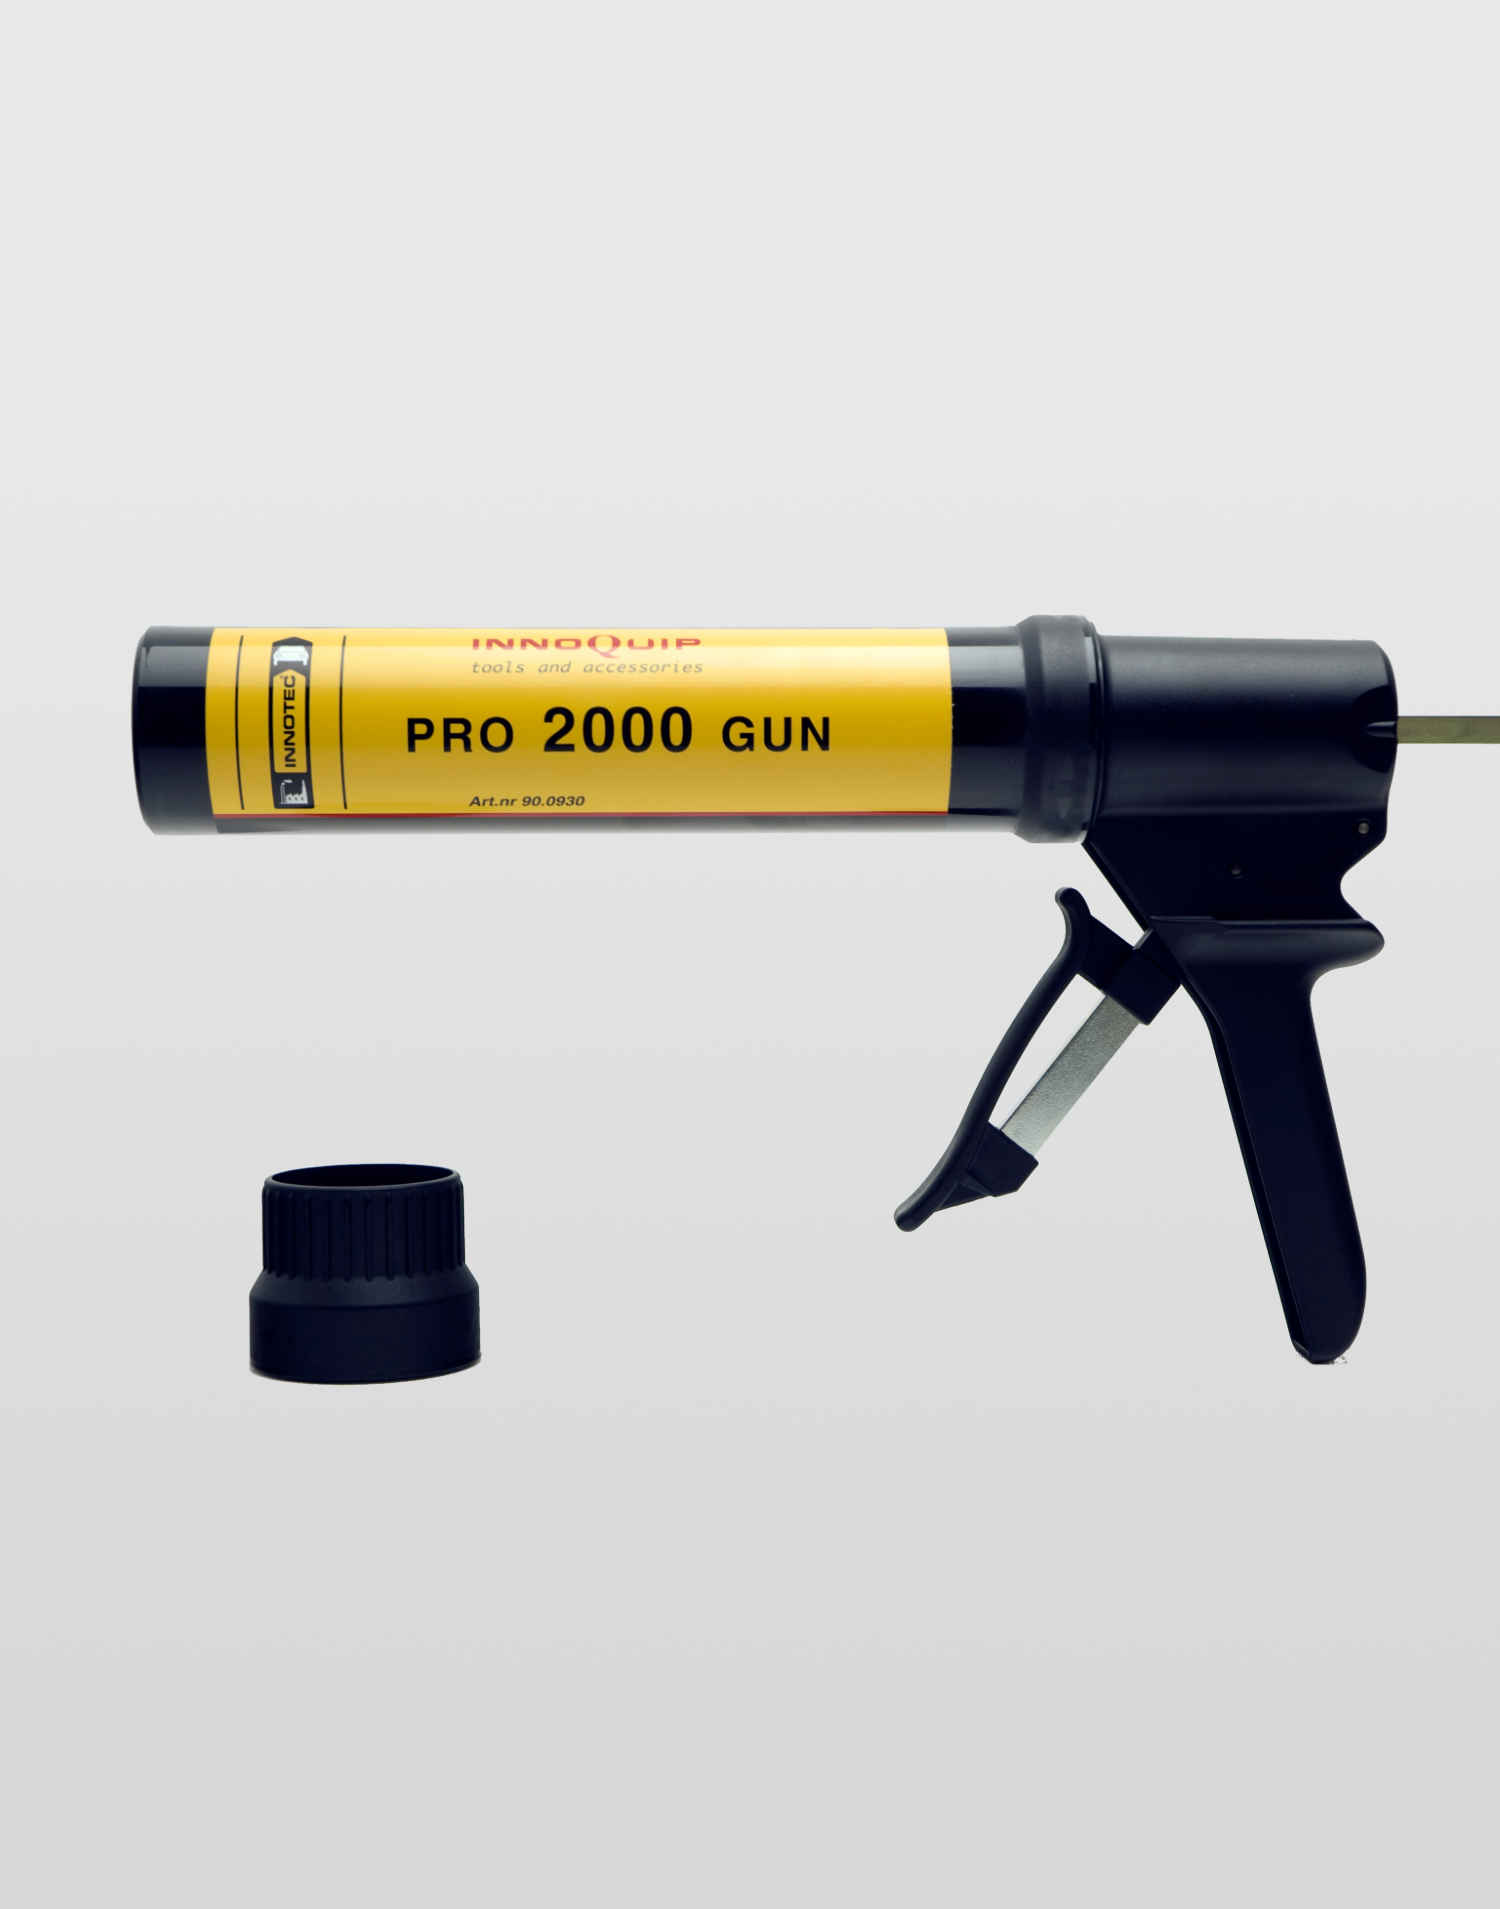 Pro 2000 Gun